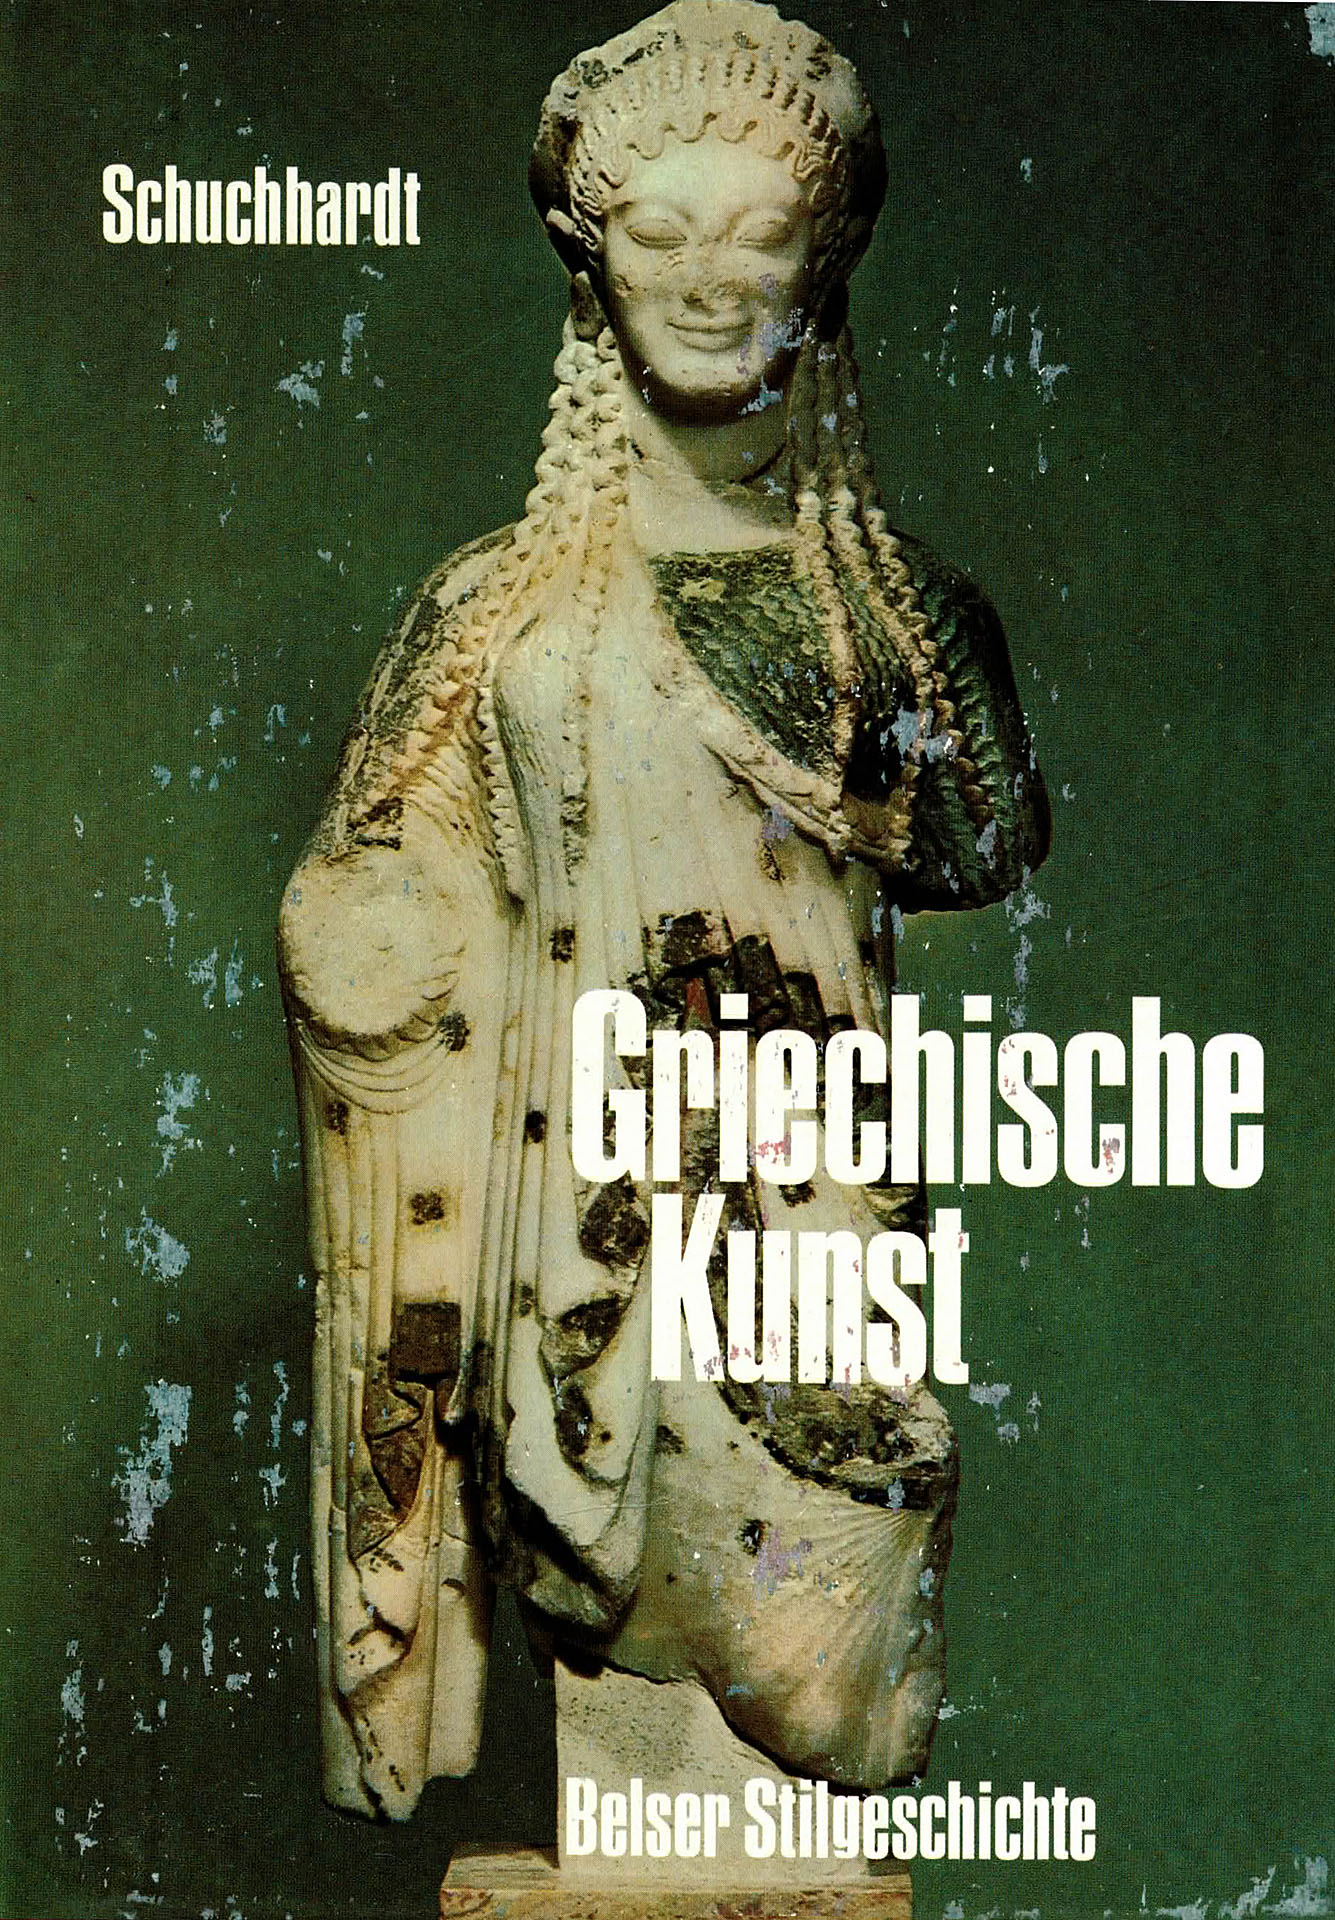 Belser Stilgeschichte Band 2 - Griechische Kunst - Schuchhardt, Walter-Herwig